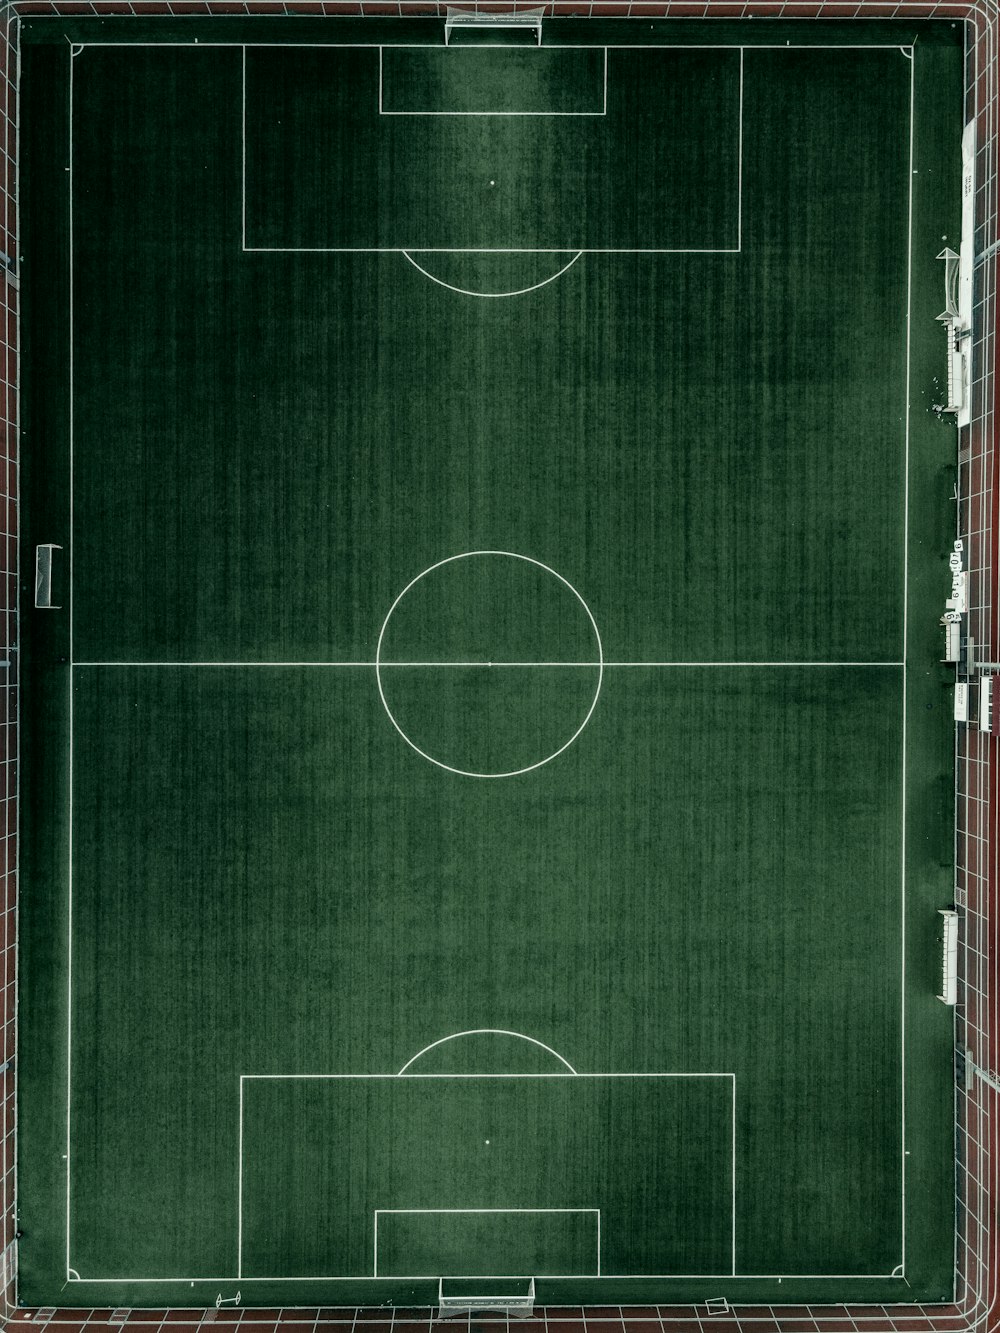 Vista aérea del campo de fútbol